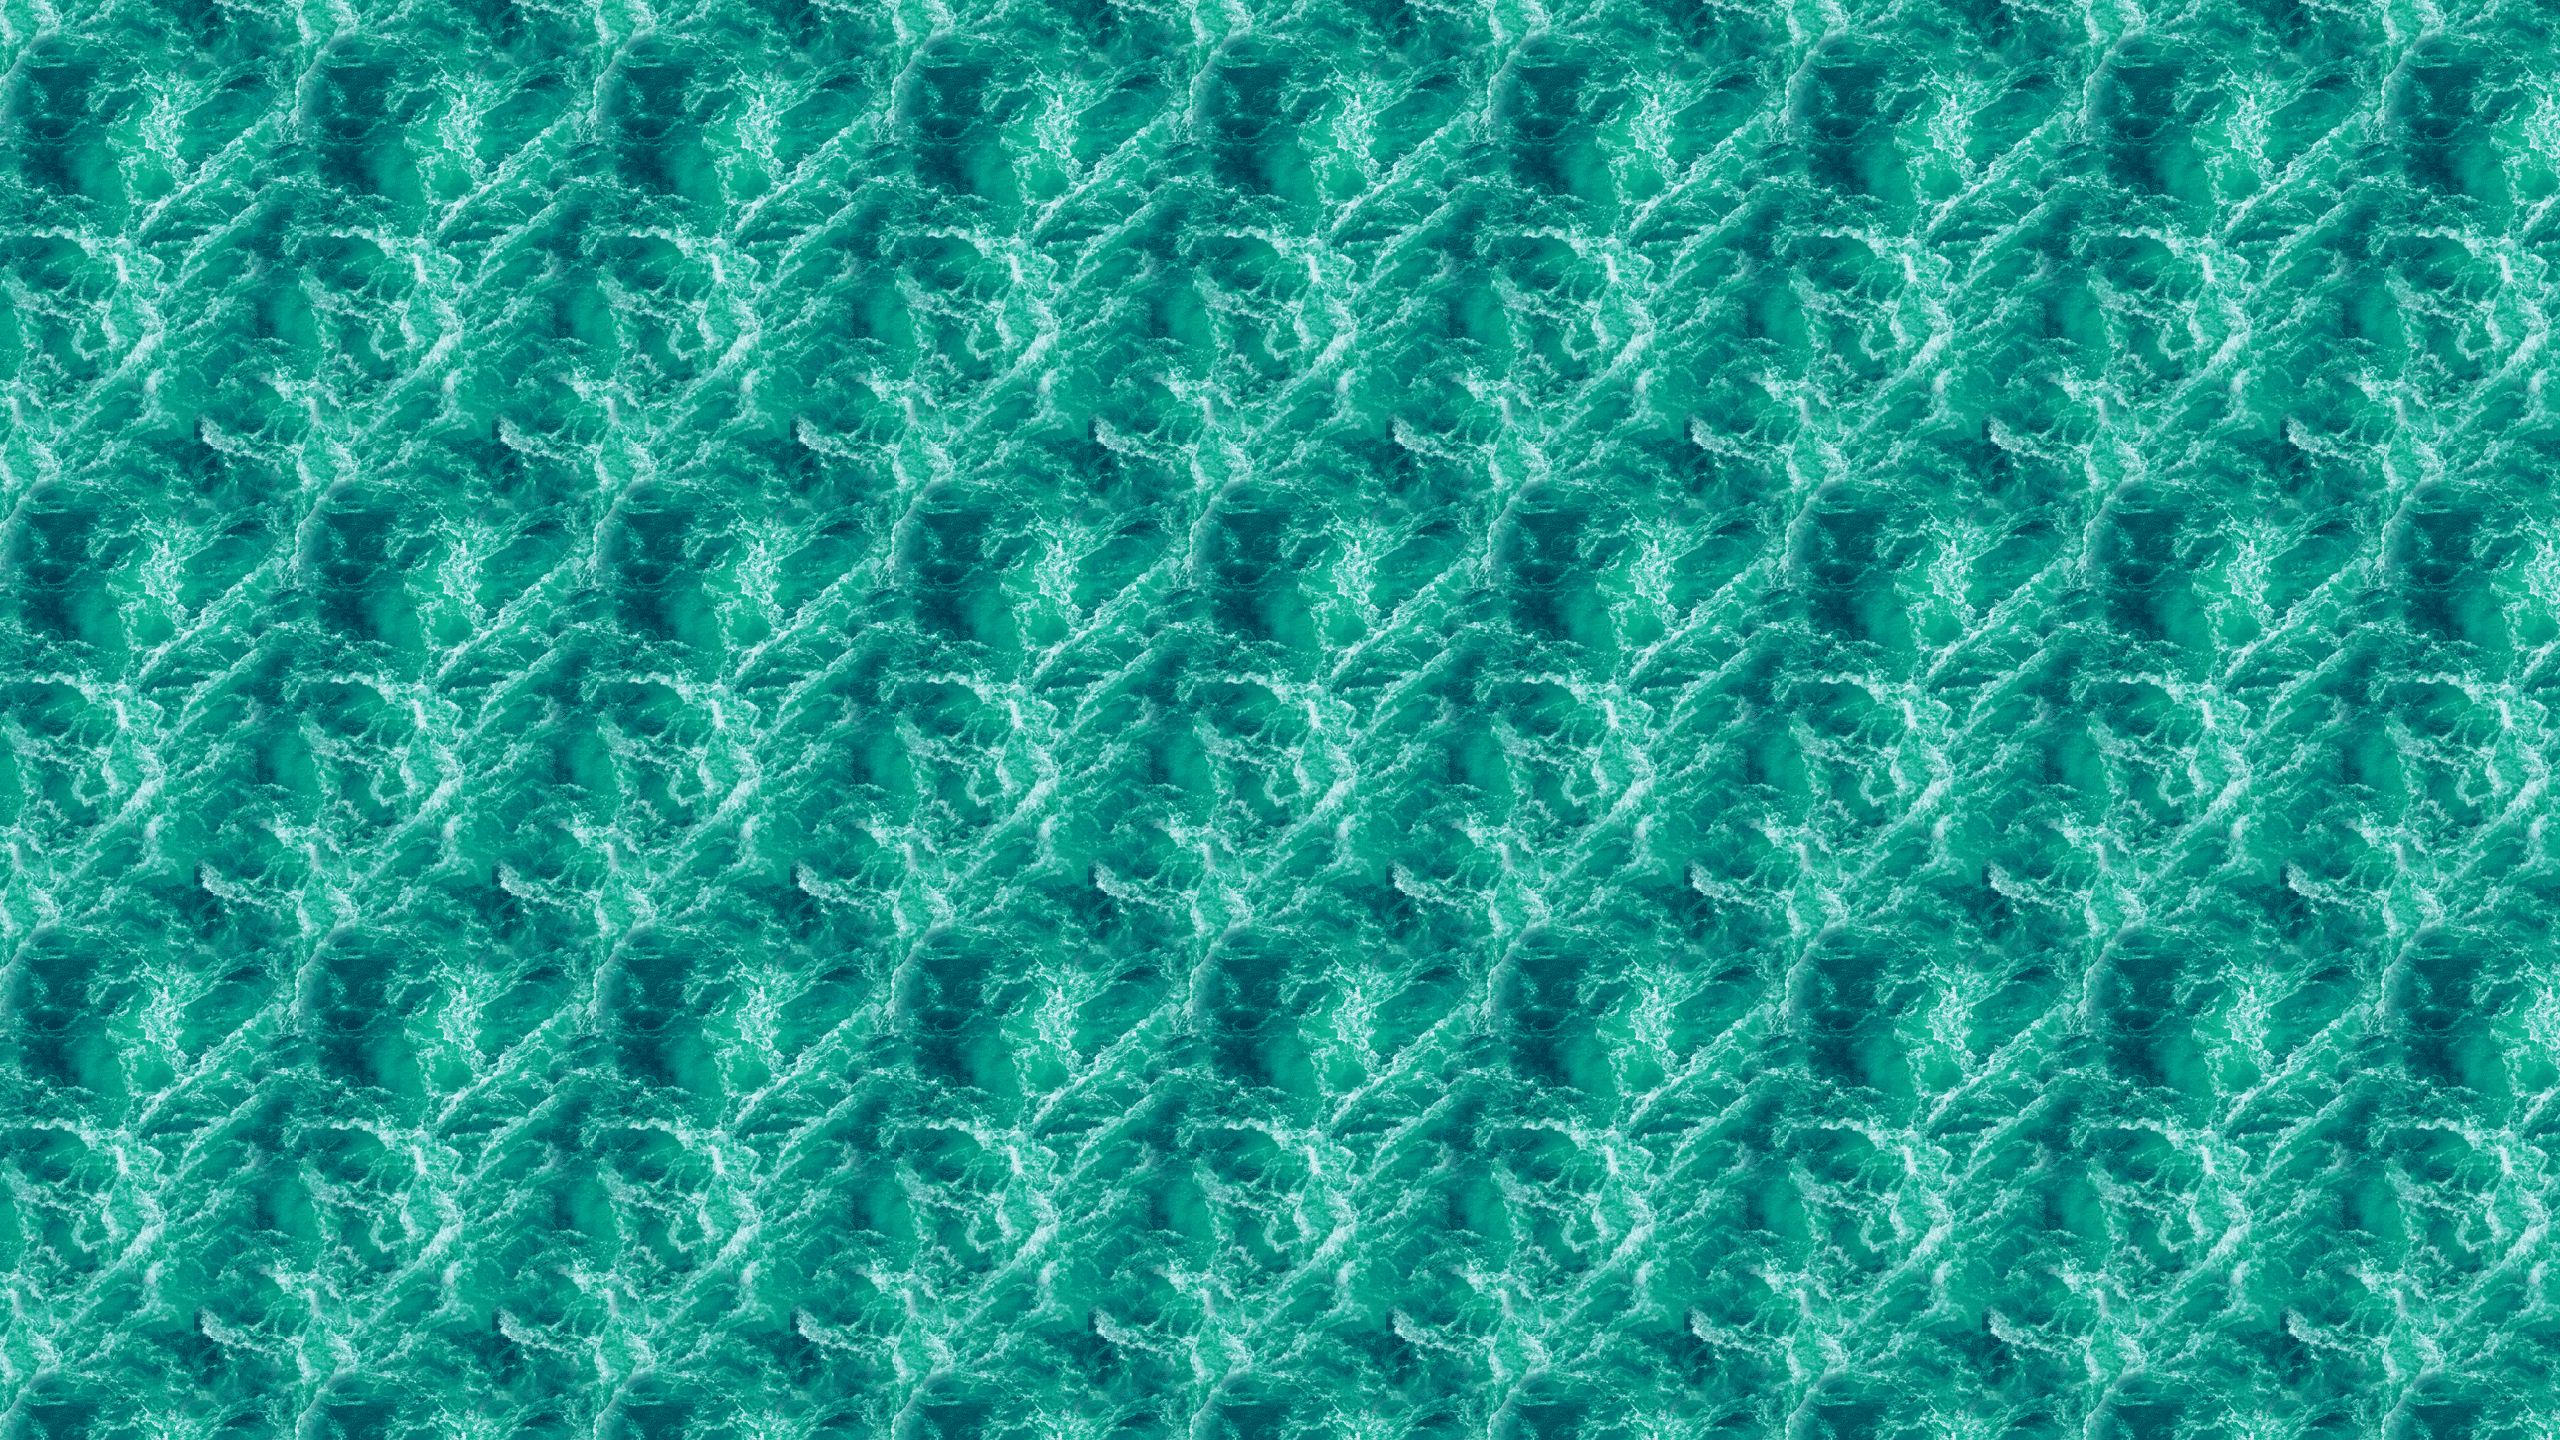 Teal Ocean Waves Desktop Wallpaper Is Easy Just Save The